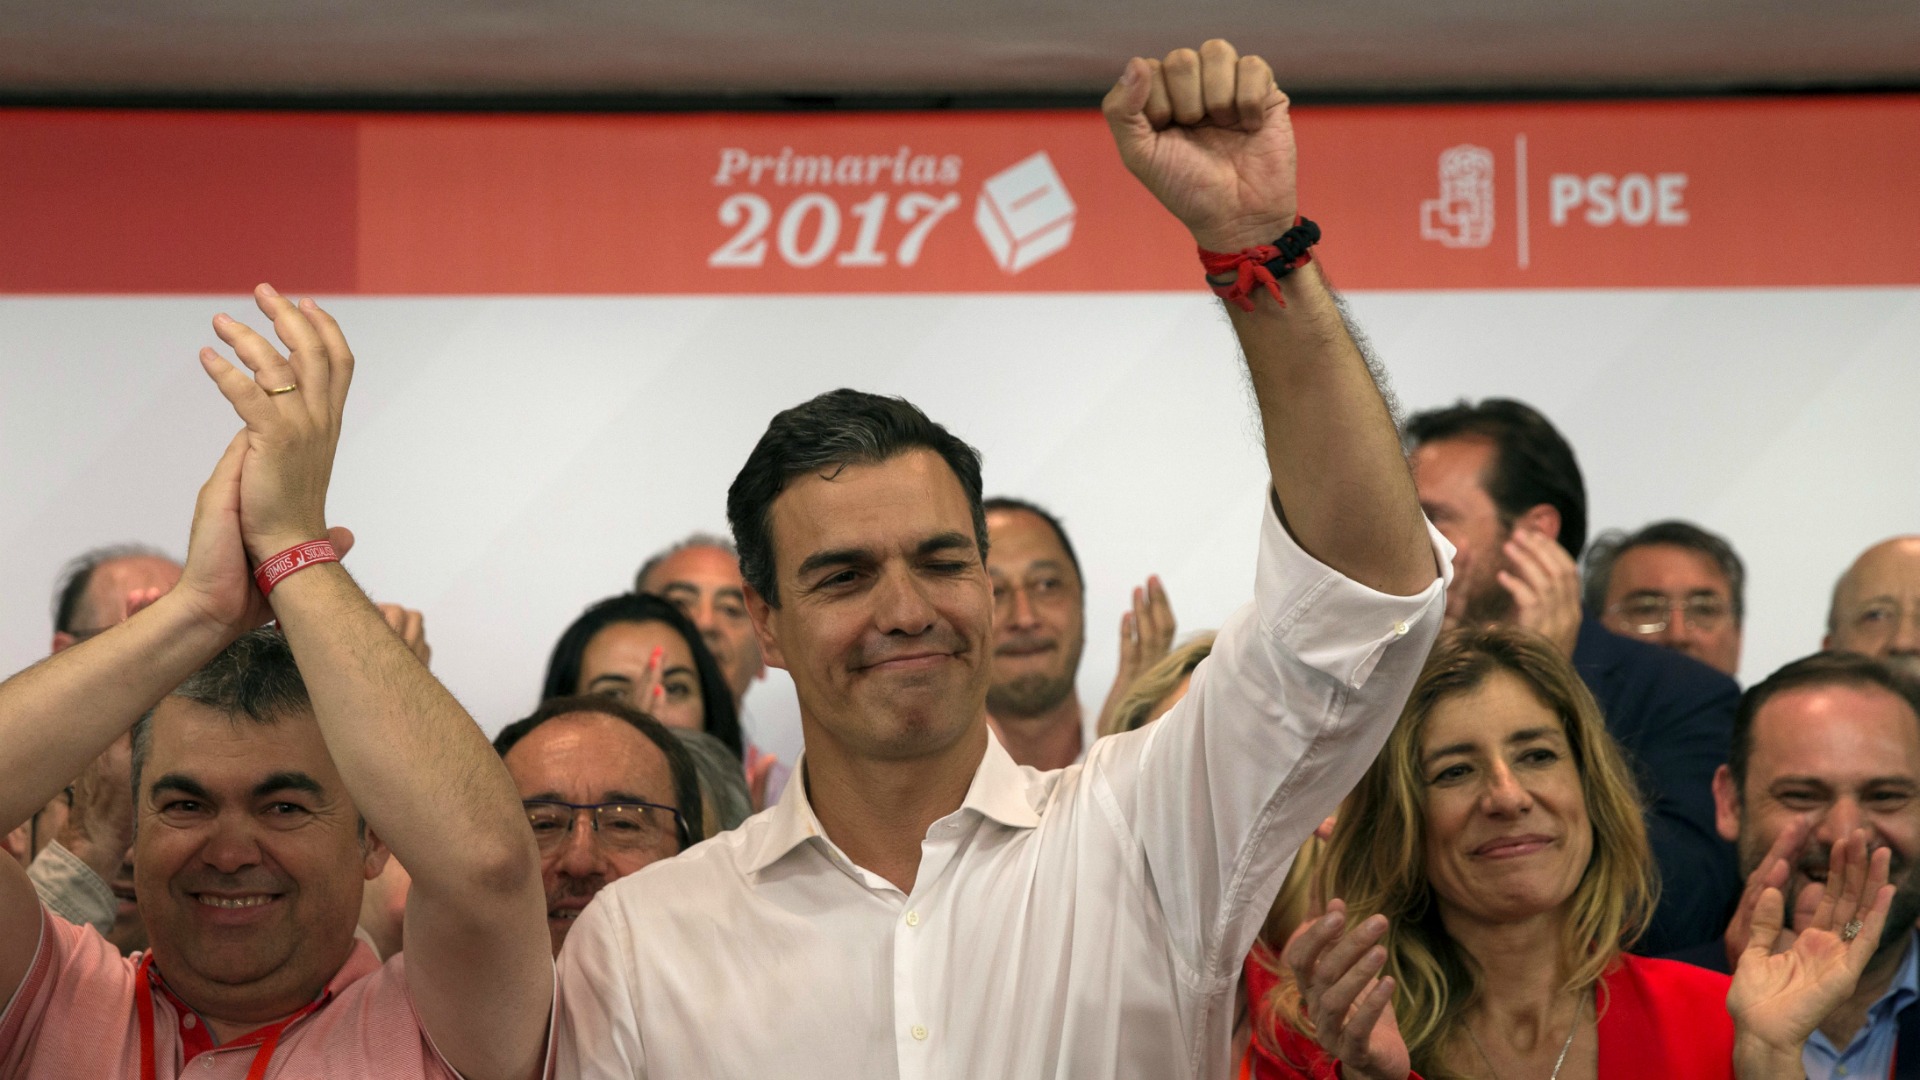 Las primarias del PSOE abren nuevas incógnitas tras la victoria de Sánchez